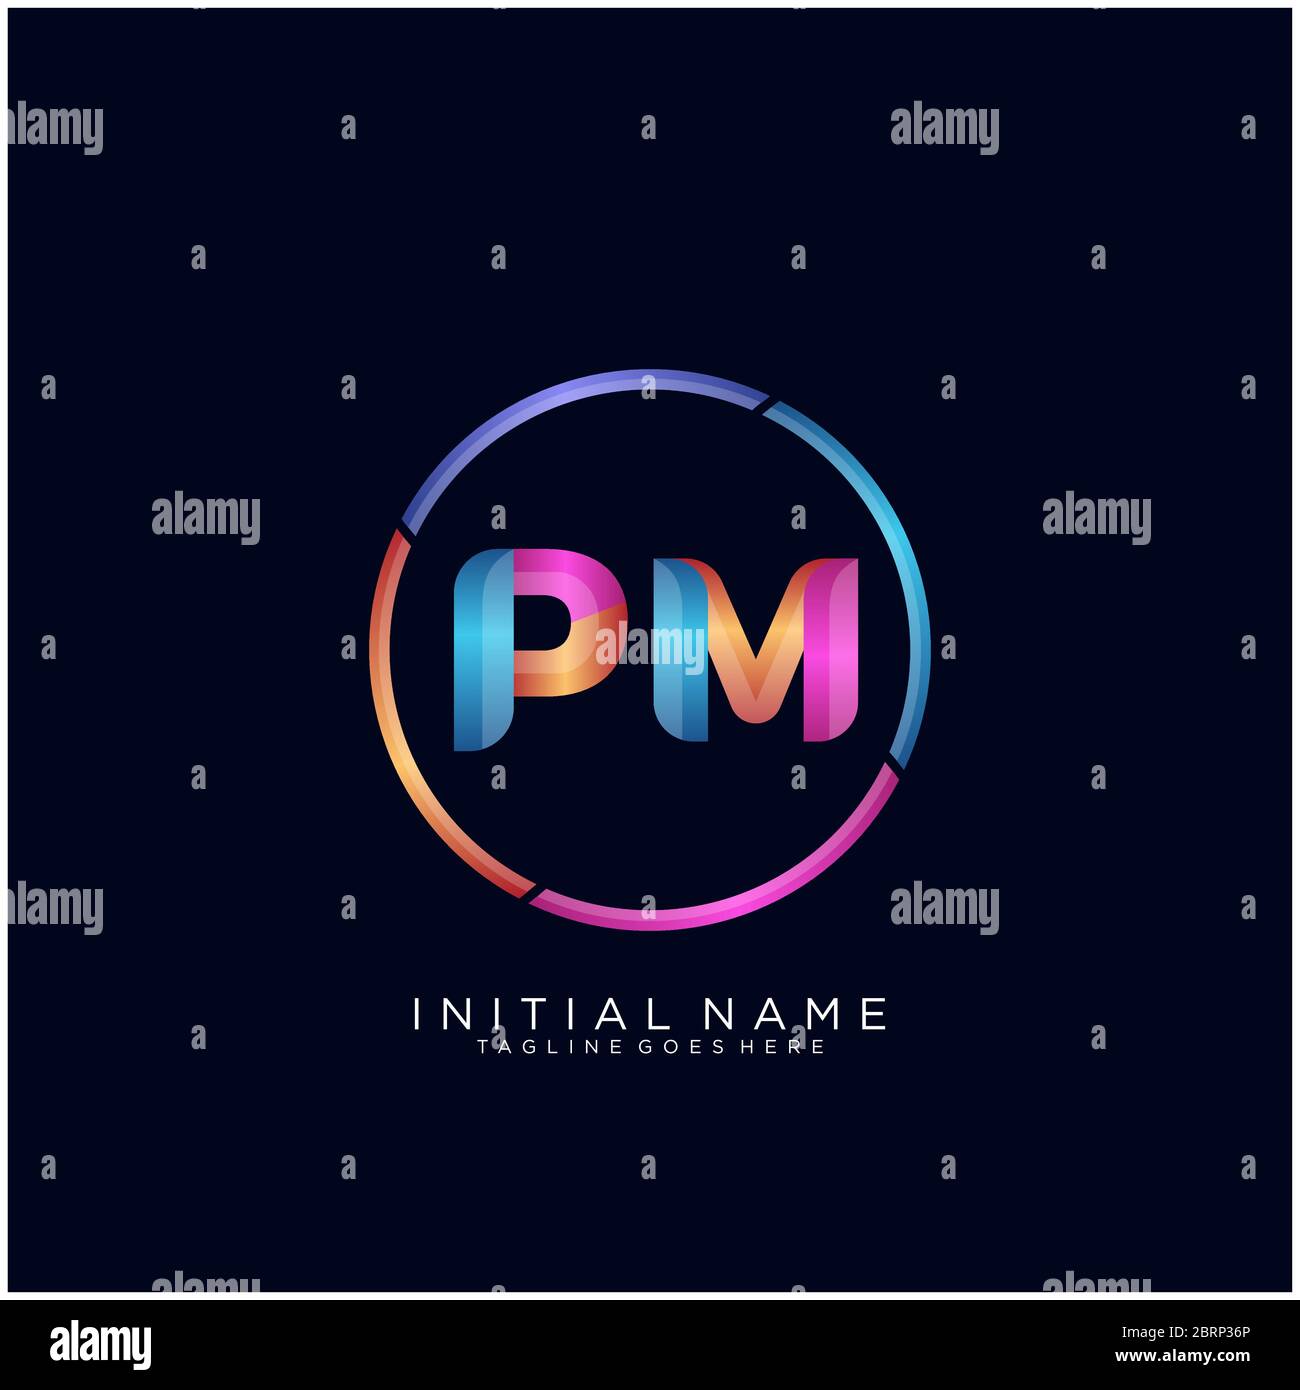 P m letter logo design on black color background Vector Image